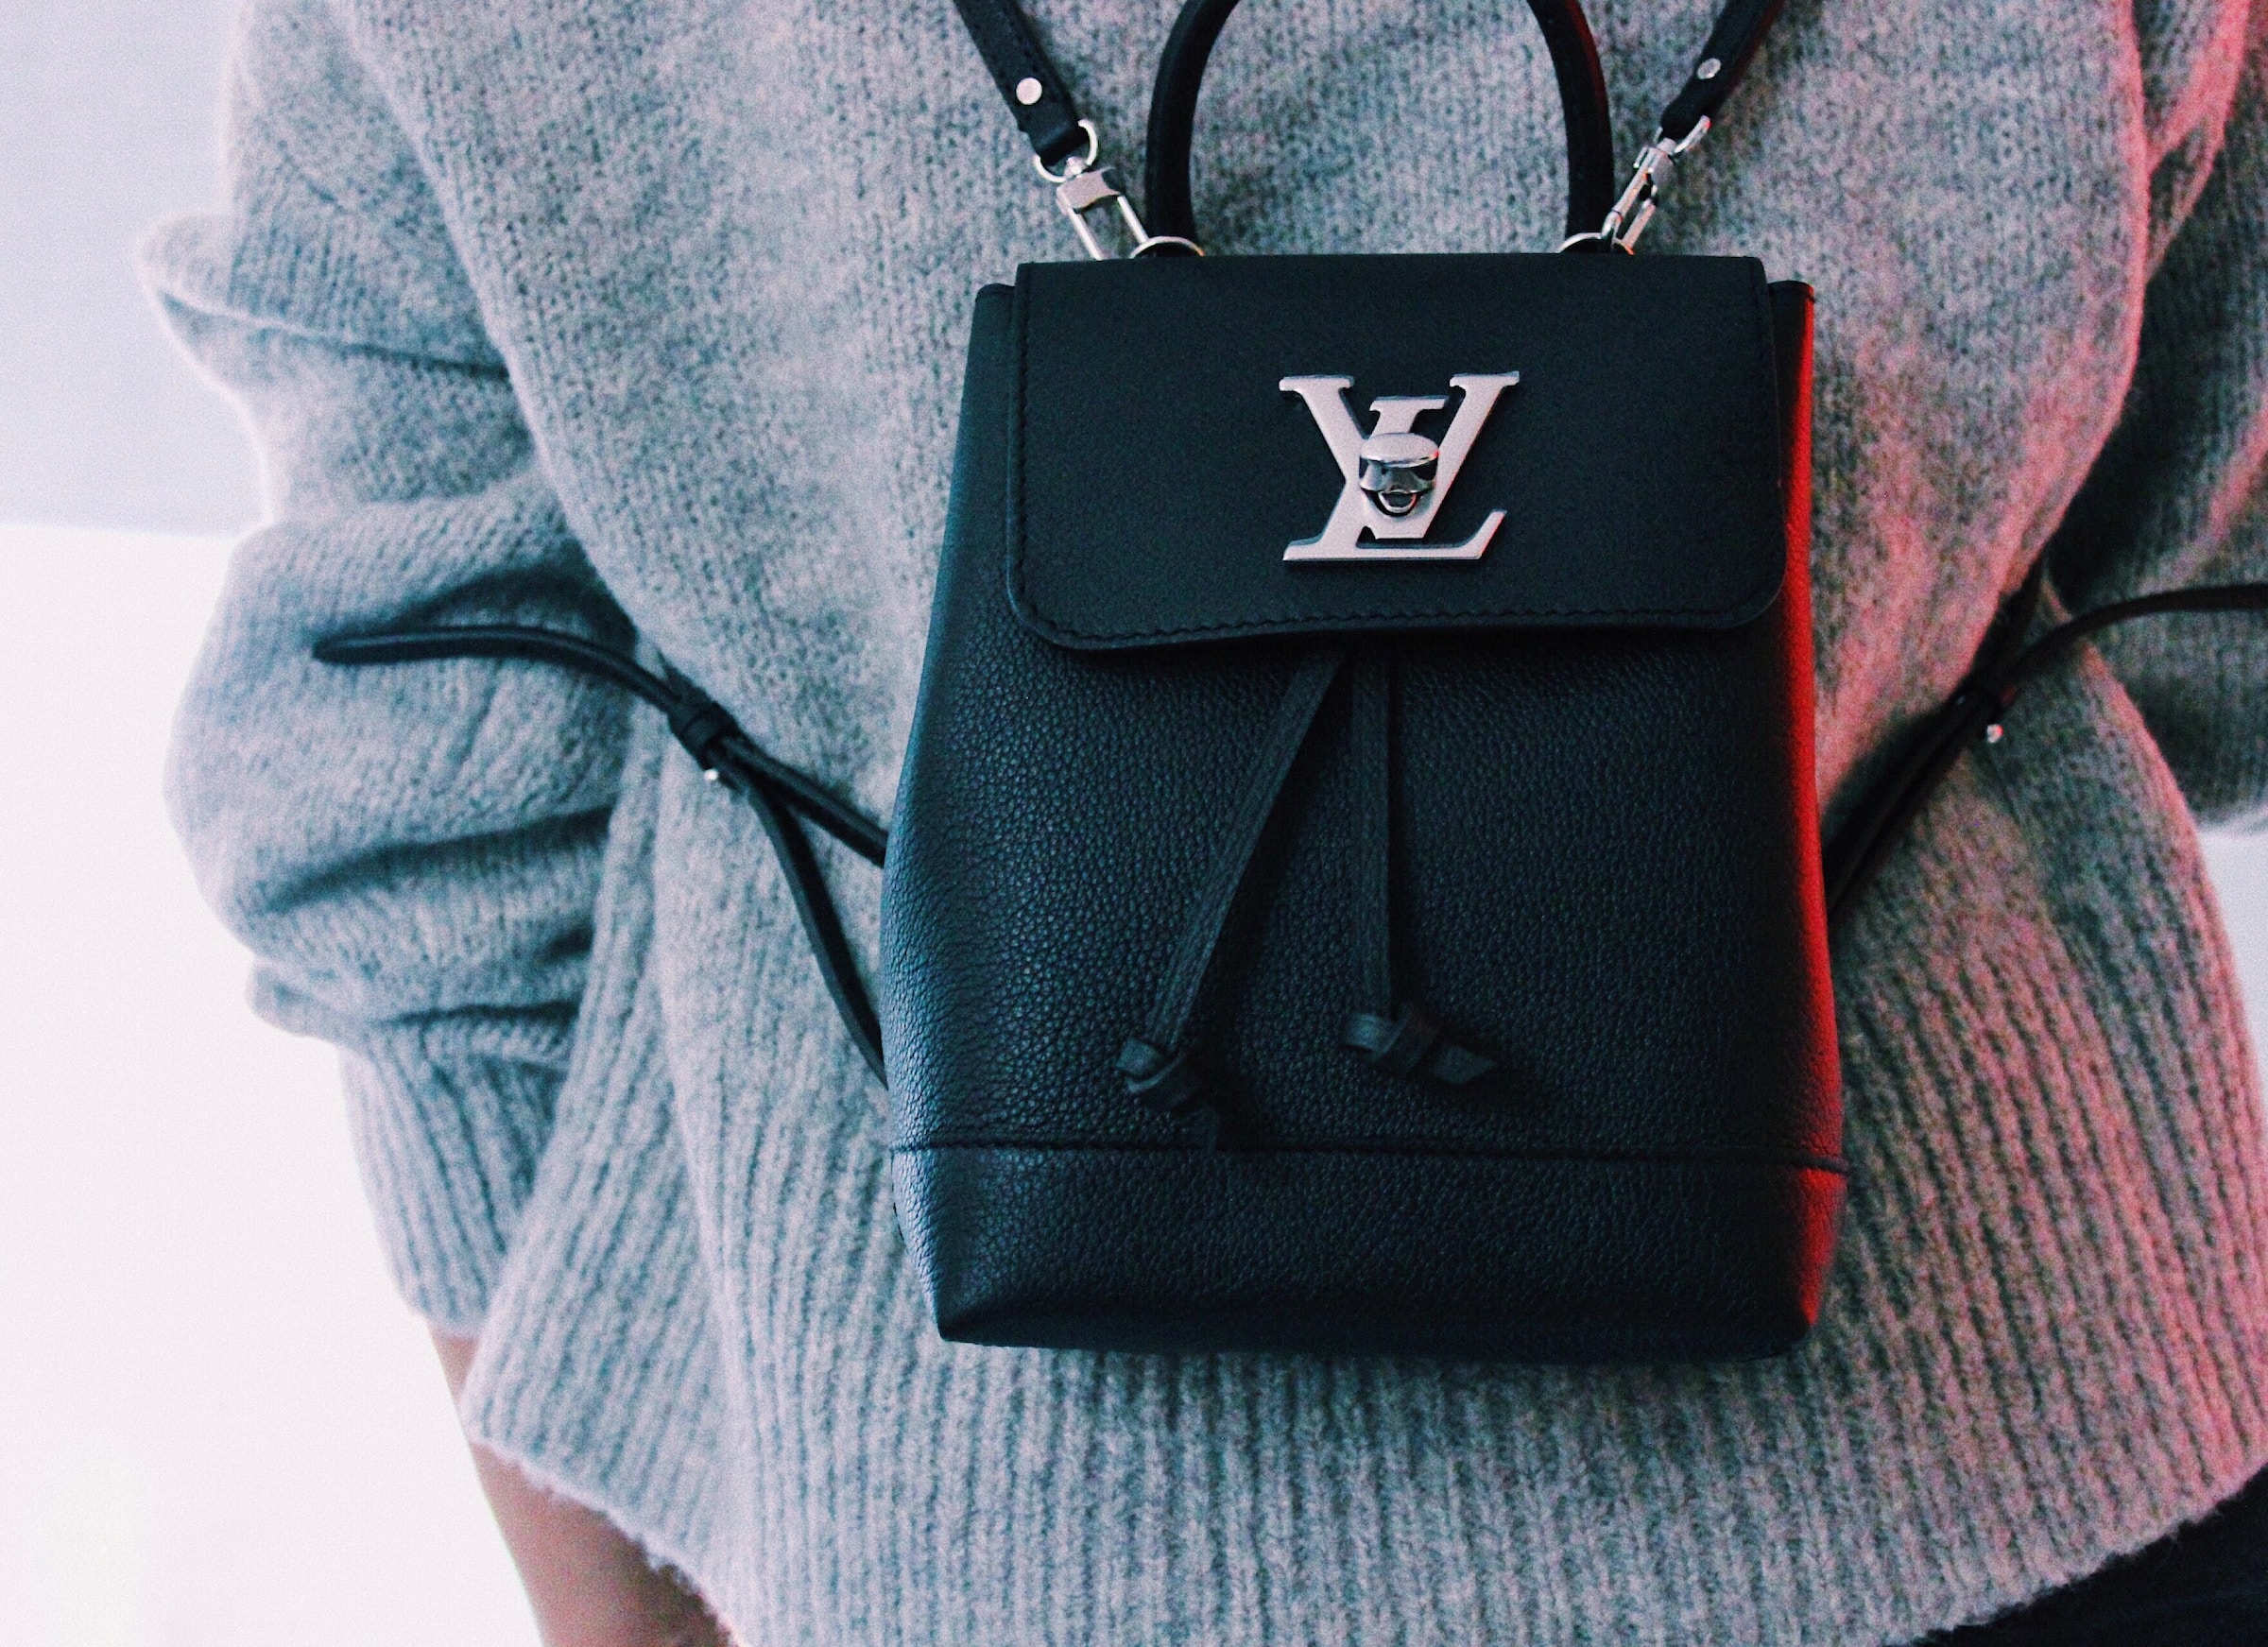 Sac à dos Louis Vuitton | Source : Unsplash